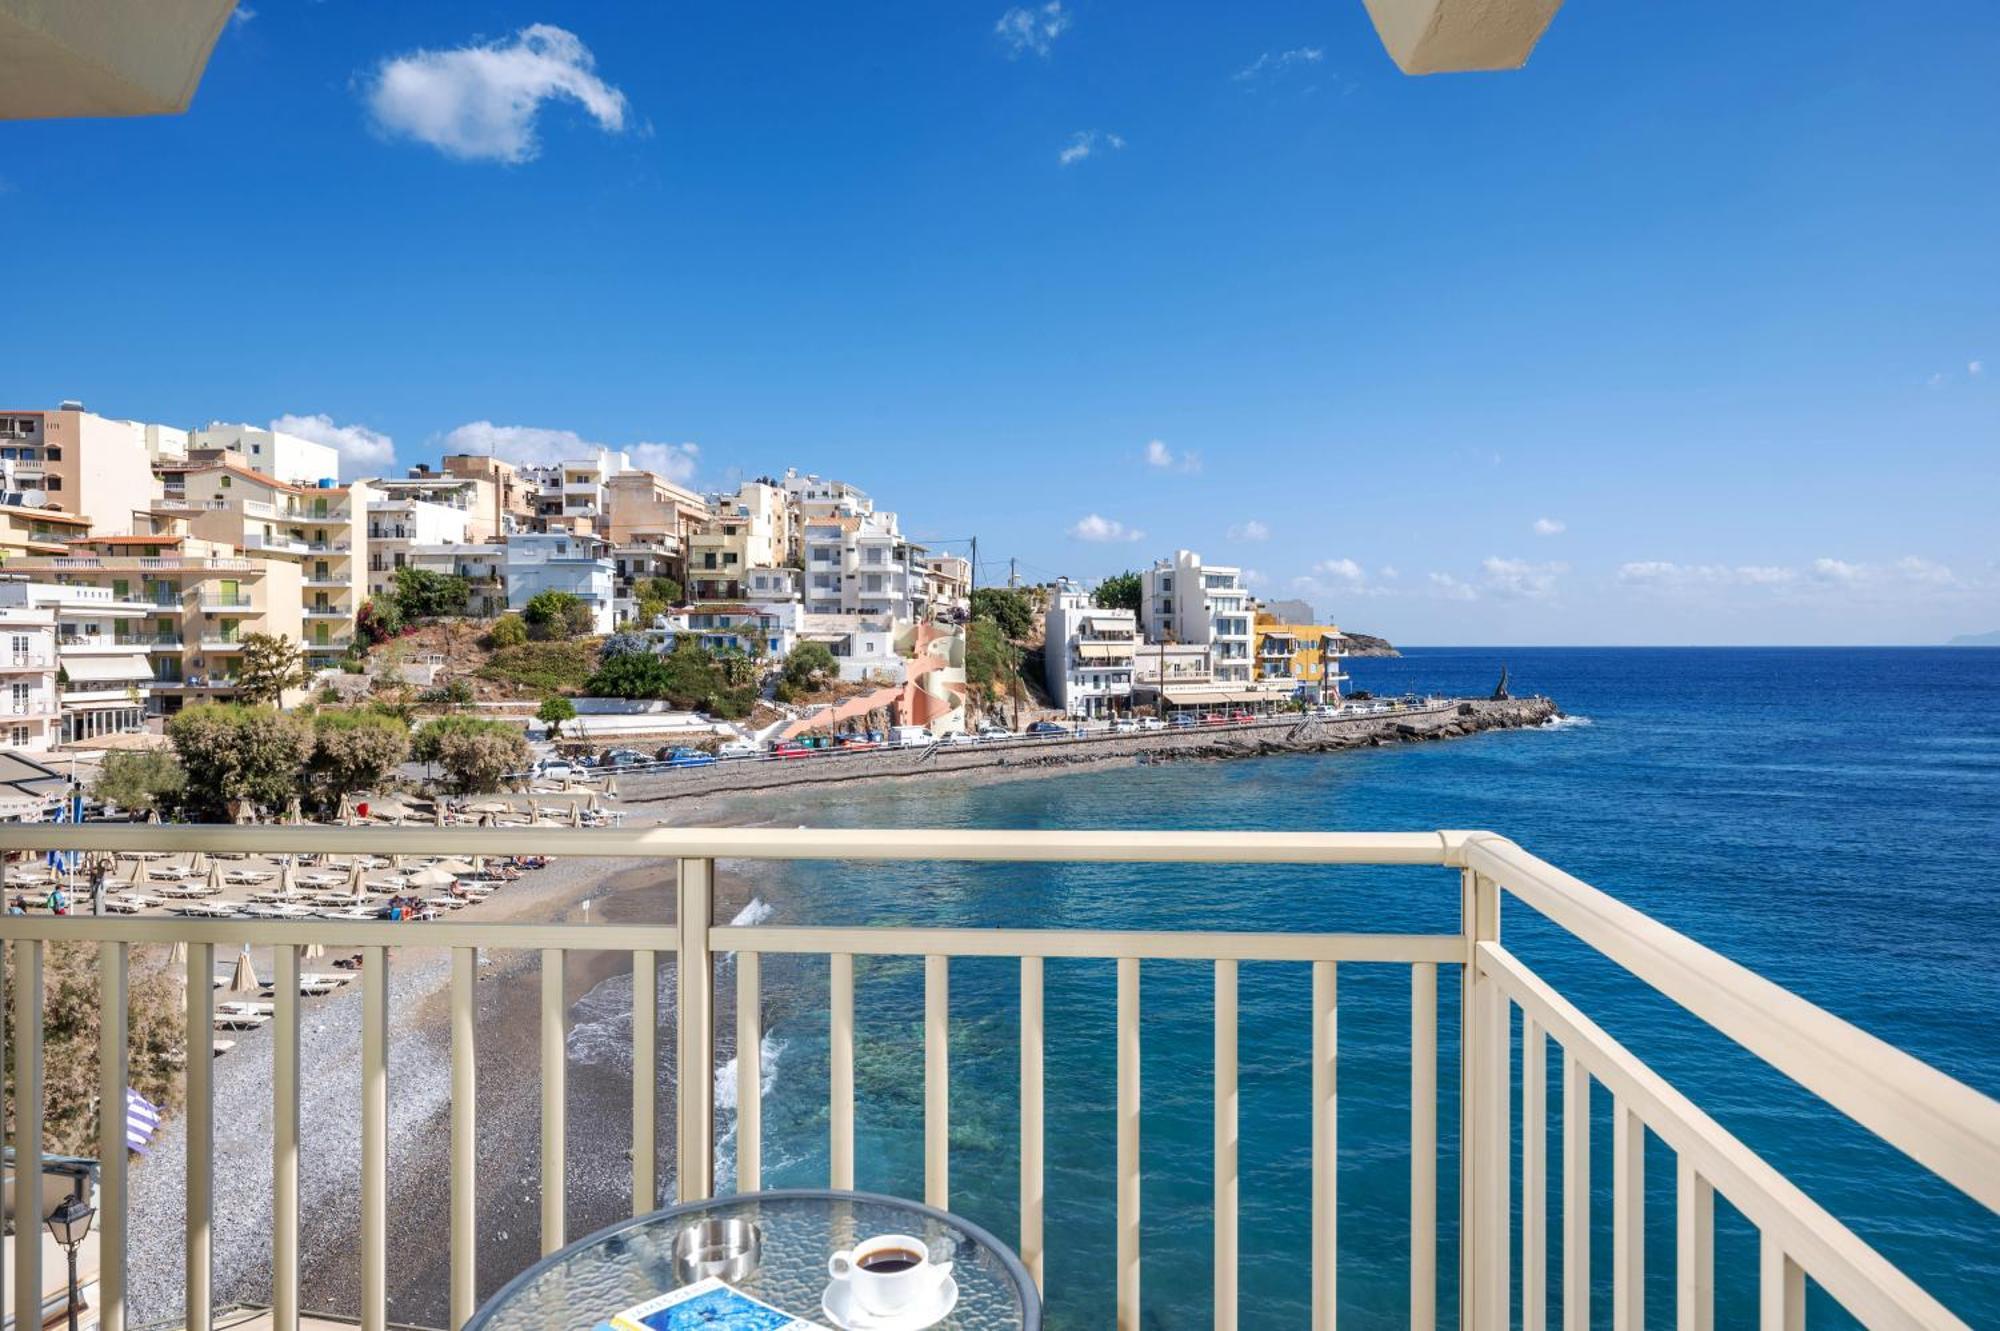 Kitro Beach Hotel Agios Nikolaos Exterior foto